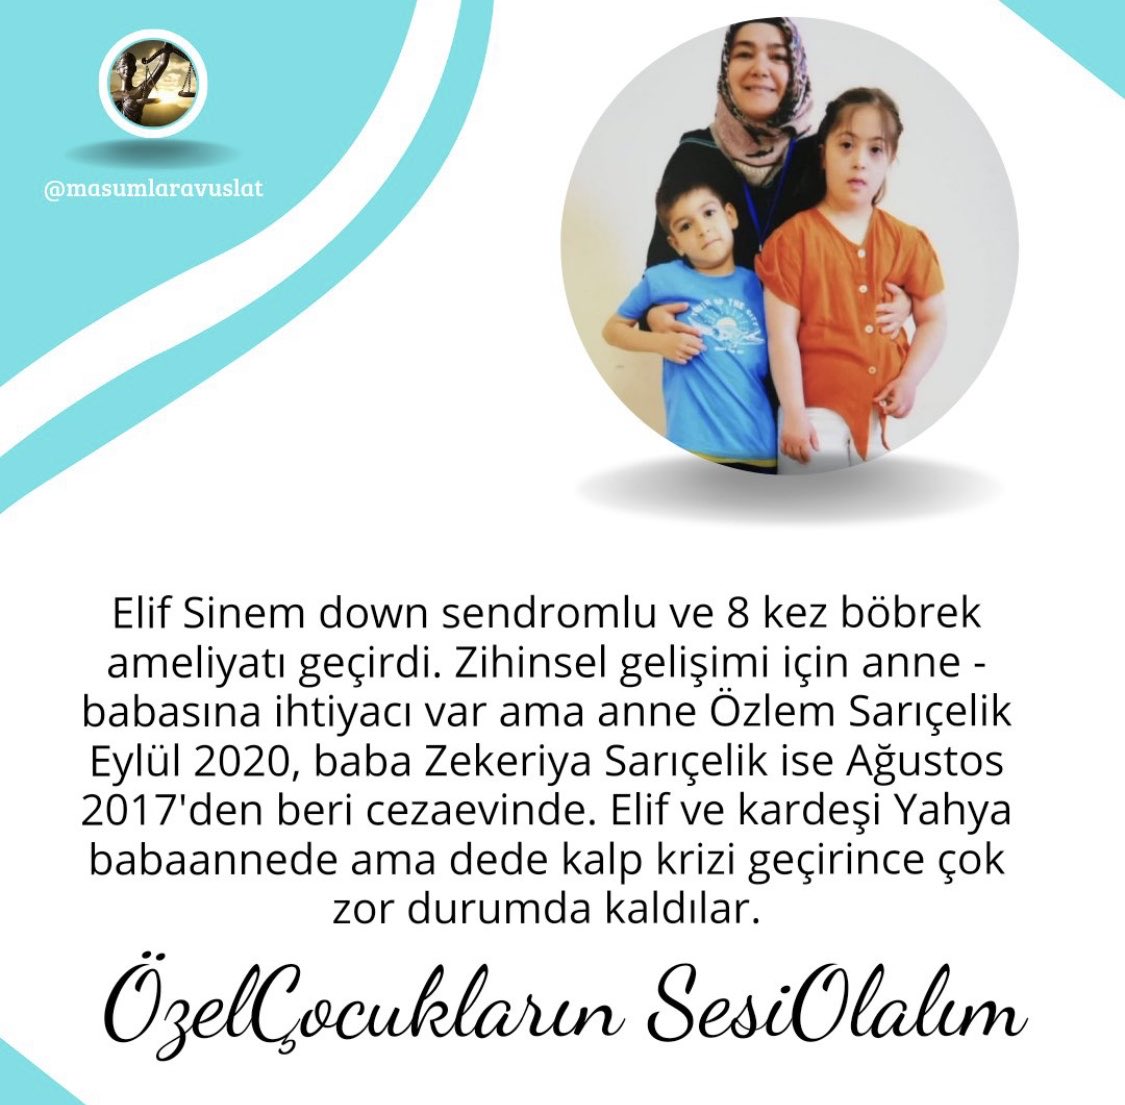 Elif Sinem
#downsendrom lu özel bir çocuk
8 defa böbrek ameliyatı geçirdi

Anne baba tutuklu bu zulümdür 
2 kardeşe babaanne bakıyor dede kalp krizi geçirmiş

Elif'in ailesine ihtiyacı var.

ÖzelÇocukların SesiOlalım